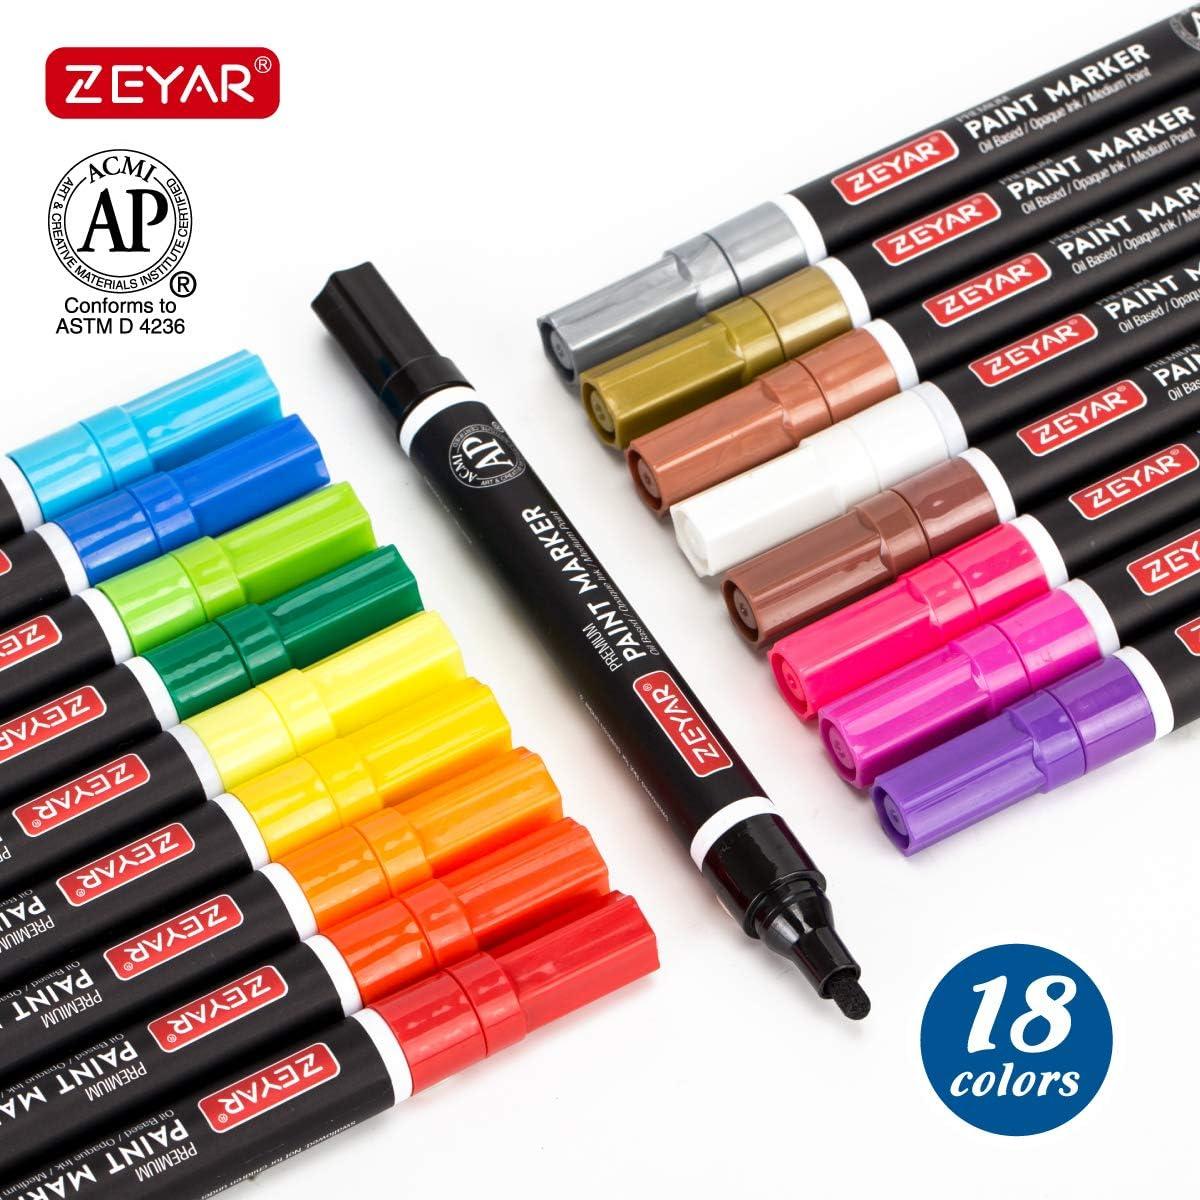 ZEYAR Permanent Markers, JUMBO Size, Set of 2, Premium Waterproof